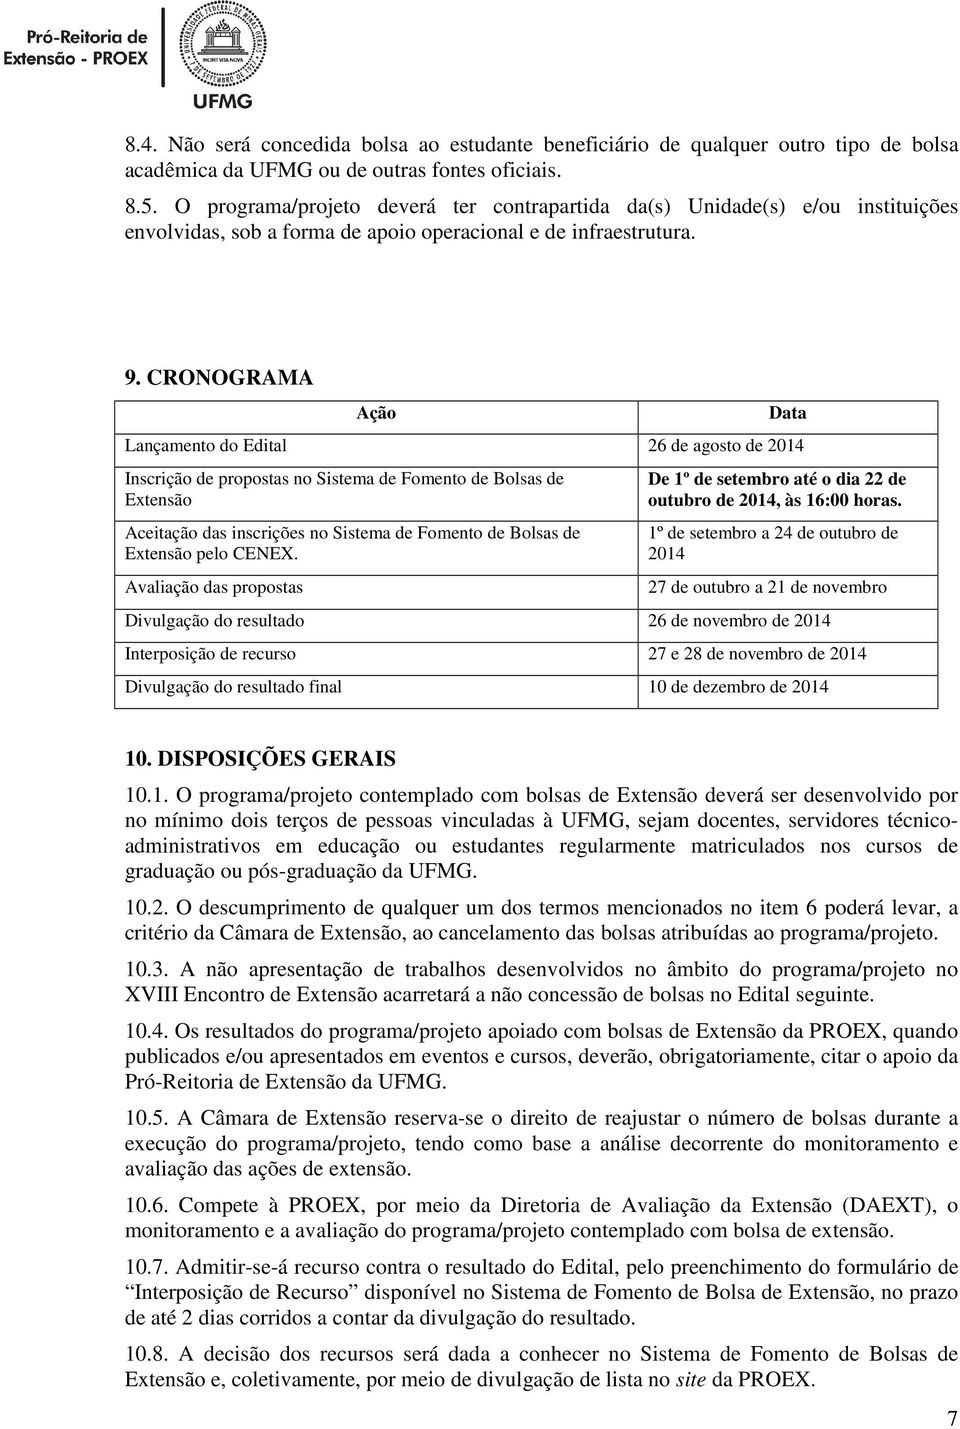 CRONOGRAMA Ação Data Lançamento do Edital 26 de agosto de 2014 Inscrição de propostas no Sistema de Fomento de Bolsas de Extensão Aceitação das inscrições no Sistema de Fomento de Bolsas de Extensão